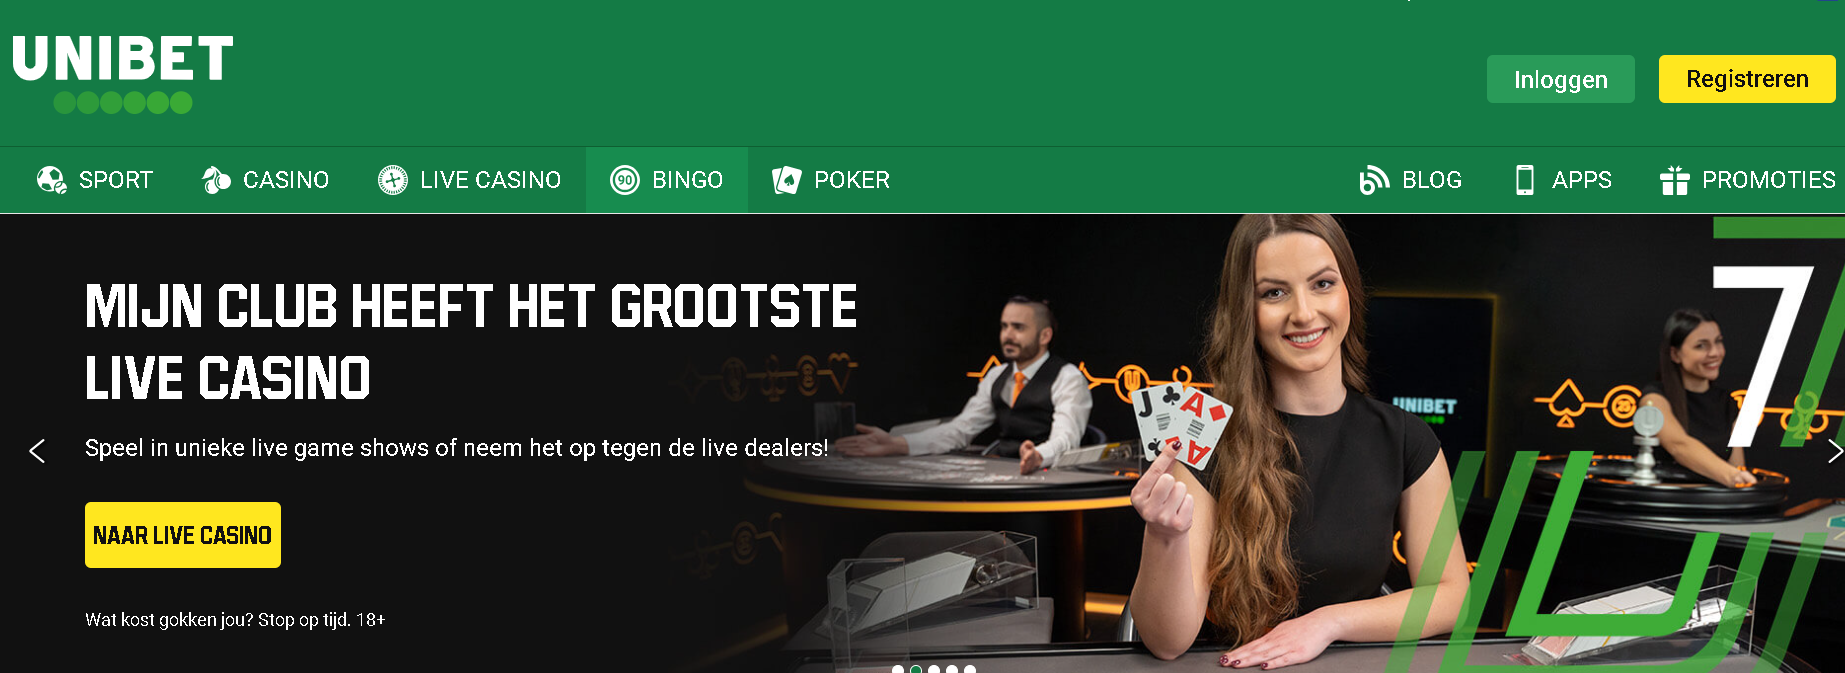 afbeelding_over_het_Unibet_casino